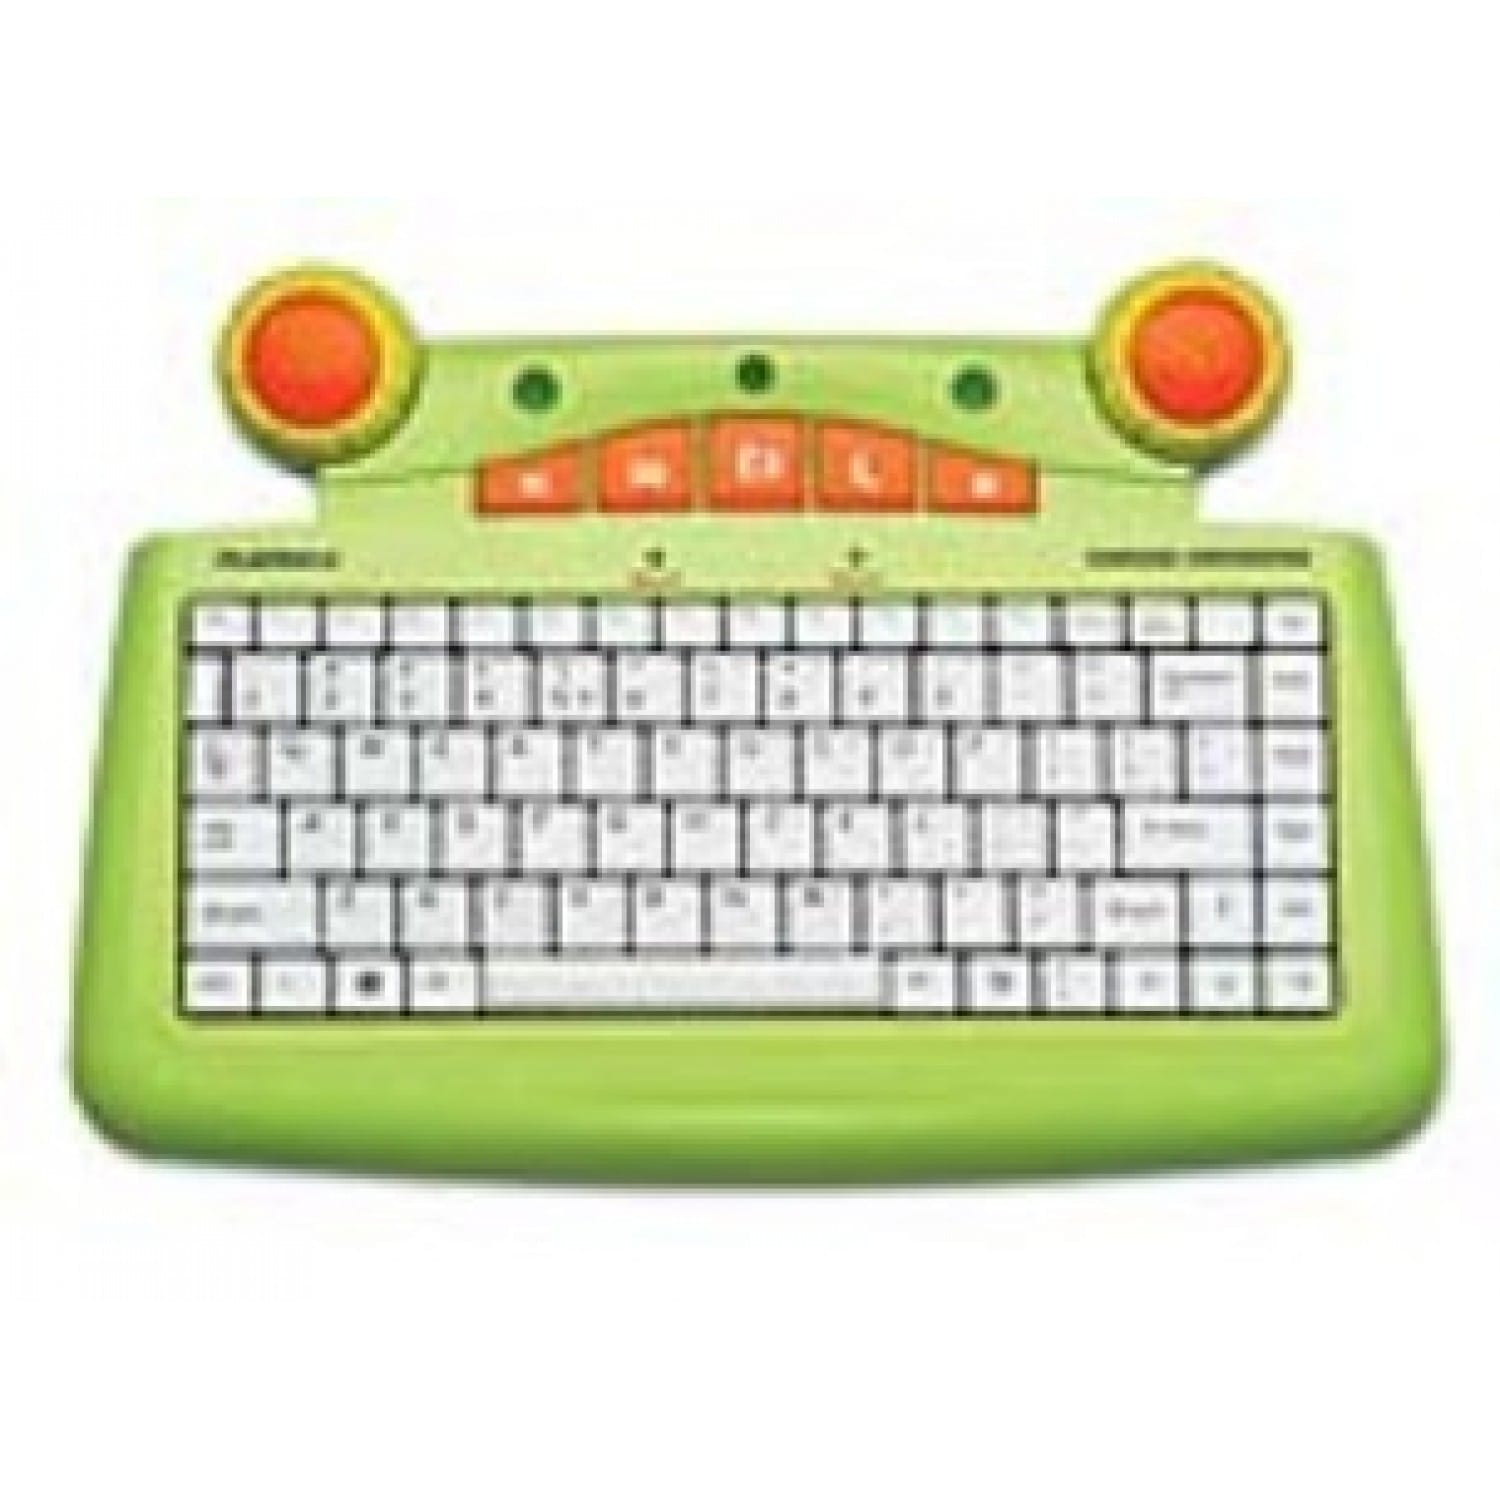 Clavier Pleomax PKB-5300 - pour enfant - clavier français AZERTY